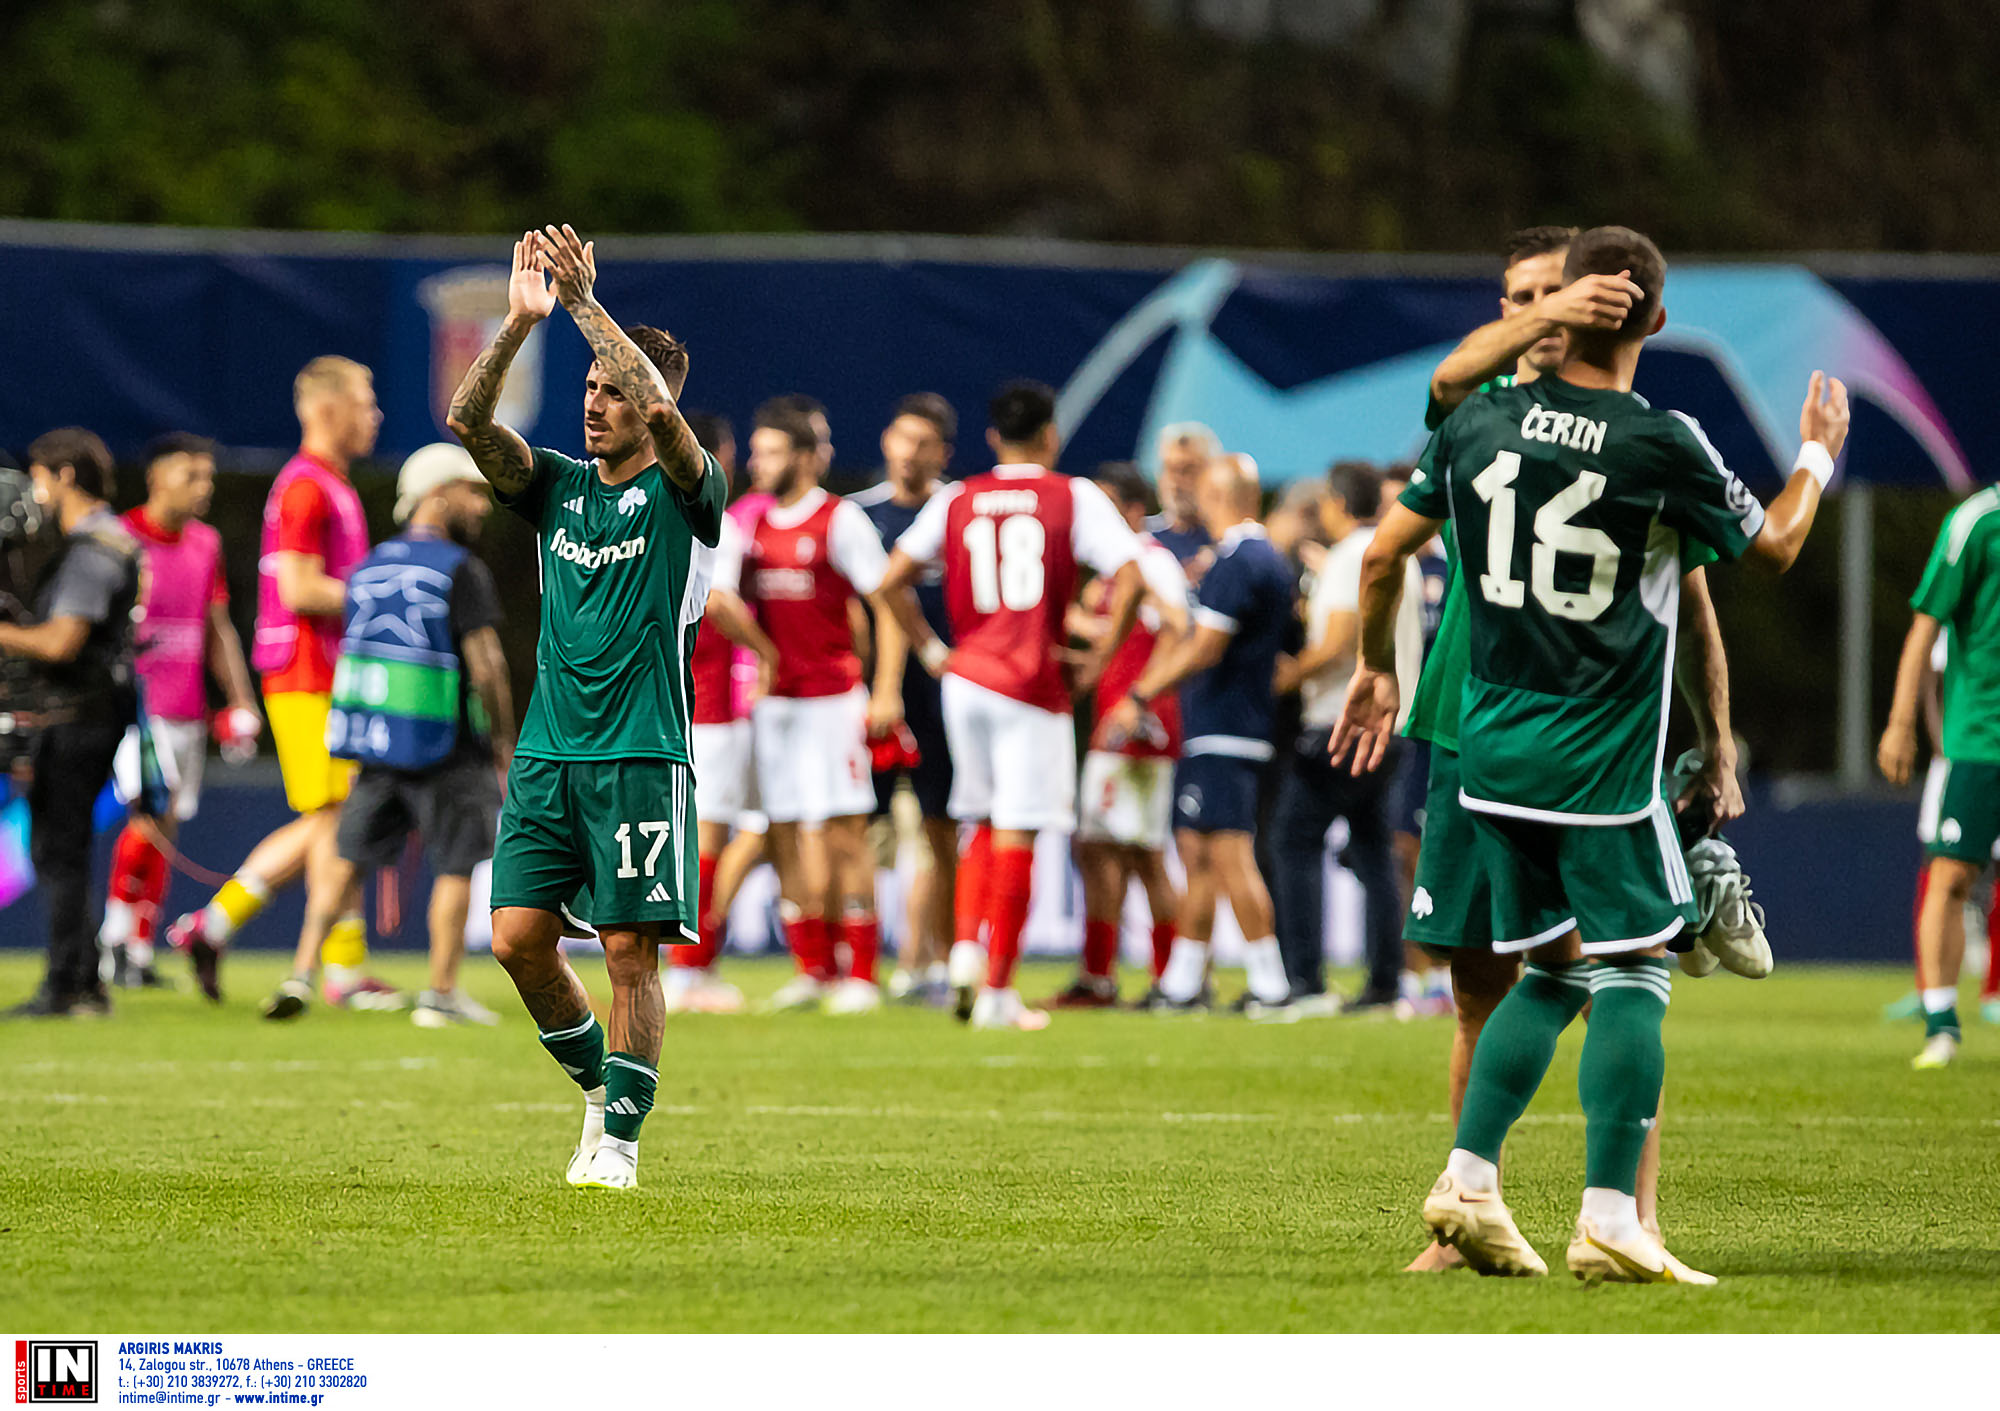 Μπράγκα – Παναθηναϊκός 2-1: Ήττα με ελπίδες πρόκρισης στο πρώτο παιχνίδι για τα play off του Champions League